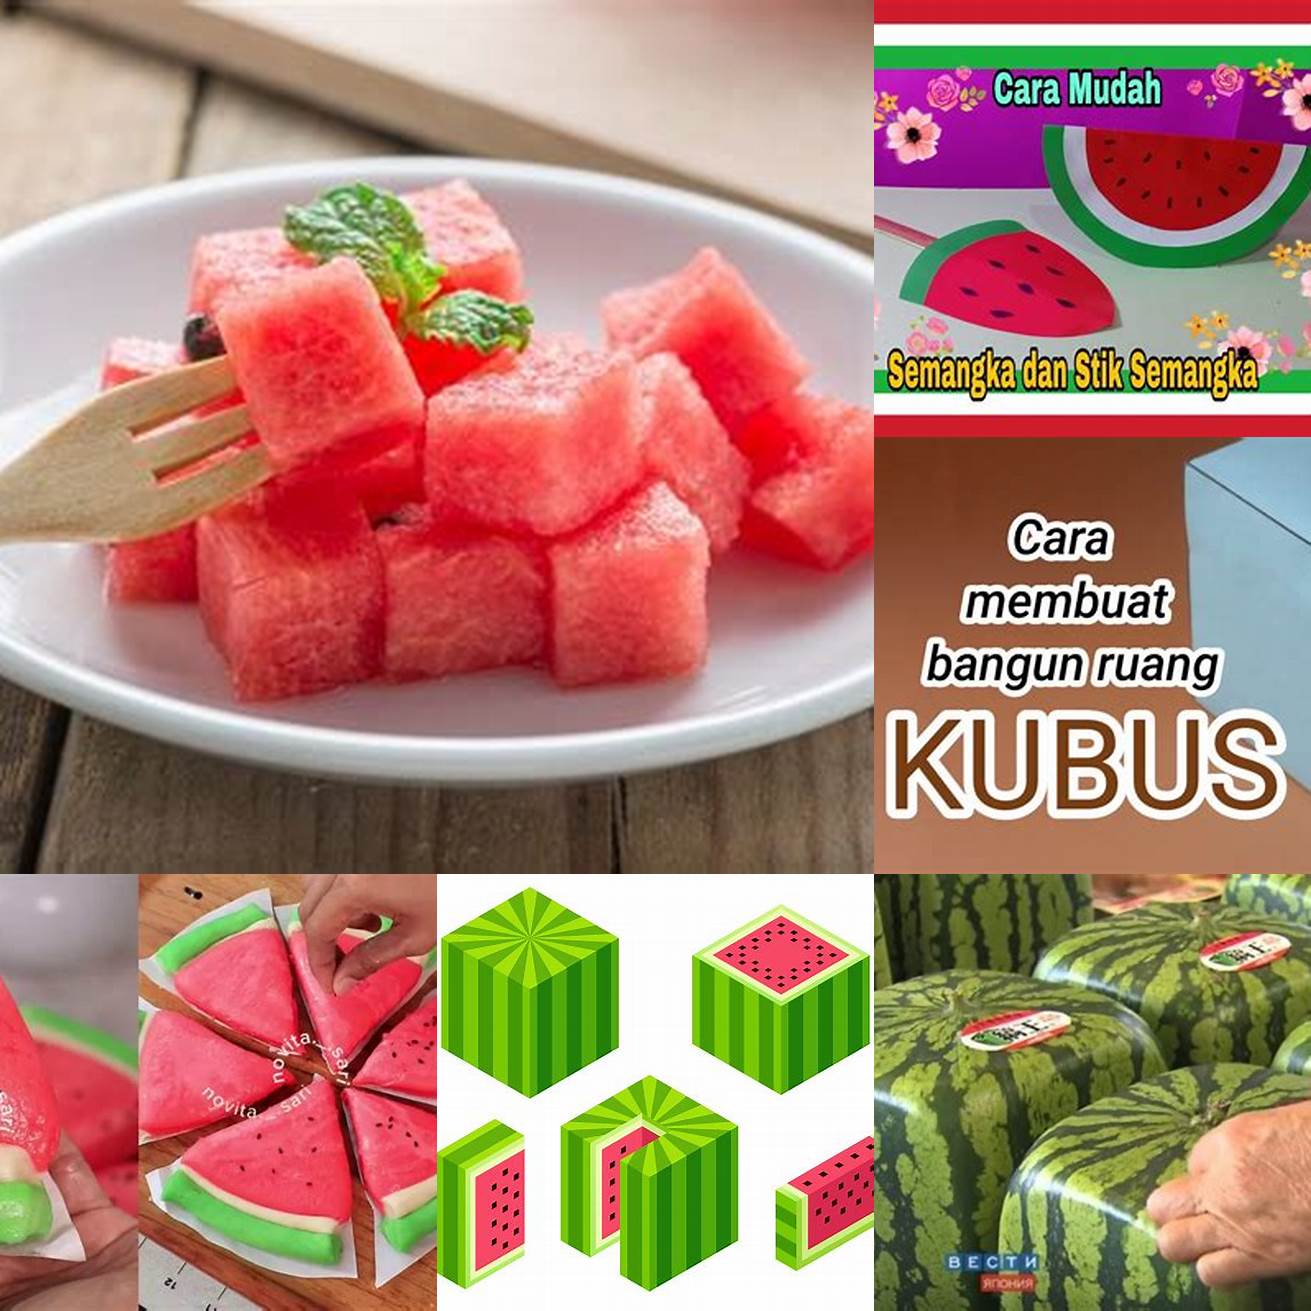 Buat semangka menjadi bentuk kubus